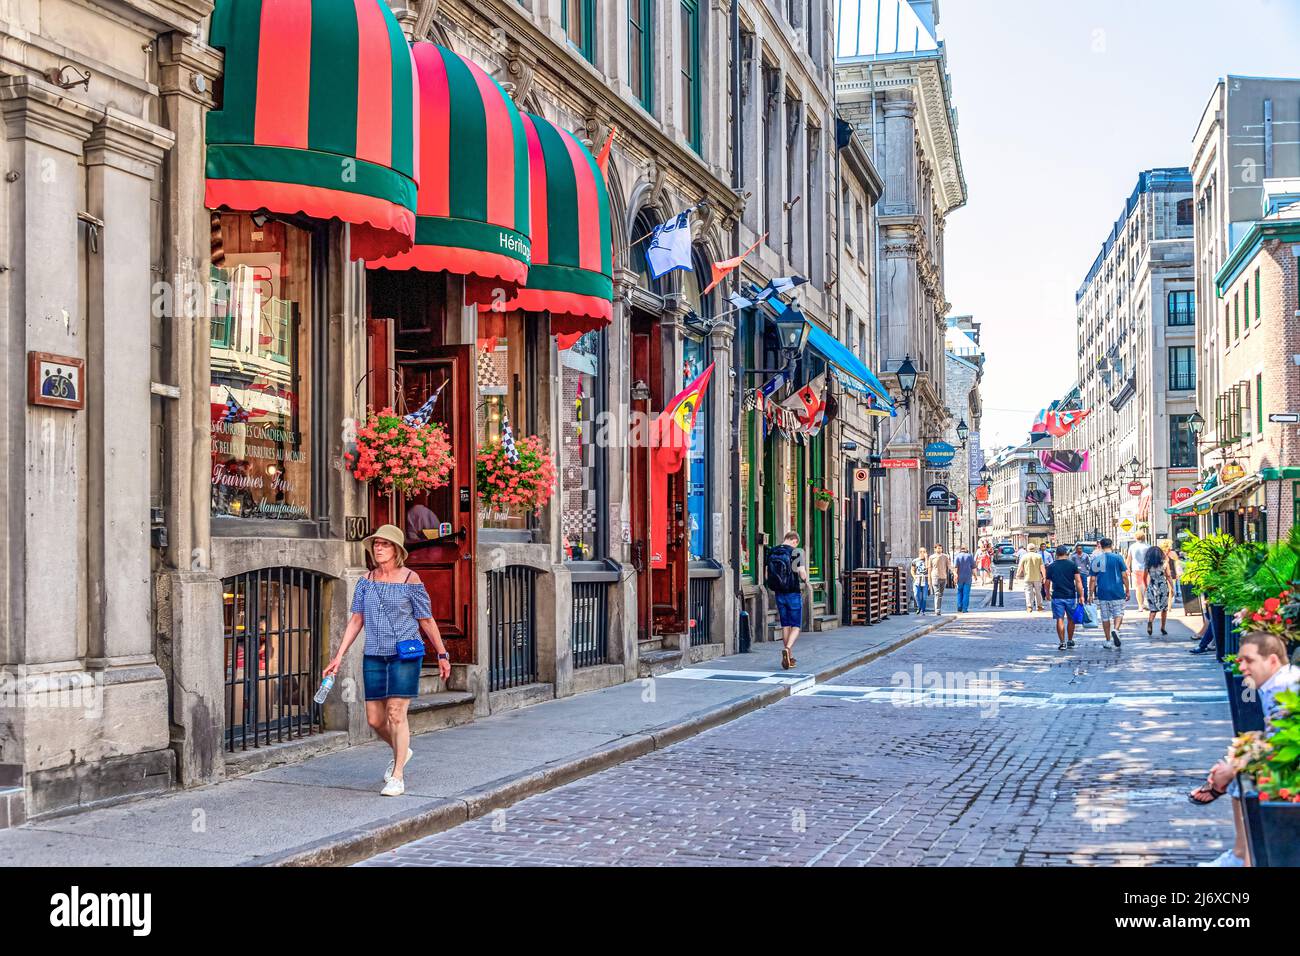 Les touristes marchant dans une rue pavée où se trouvent les petites entreprises. L'architecture de style colonial est située dans le quartier du Vieux-Montréal W Banque D'Images